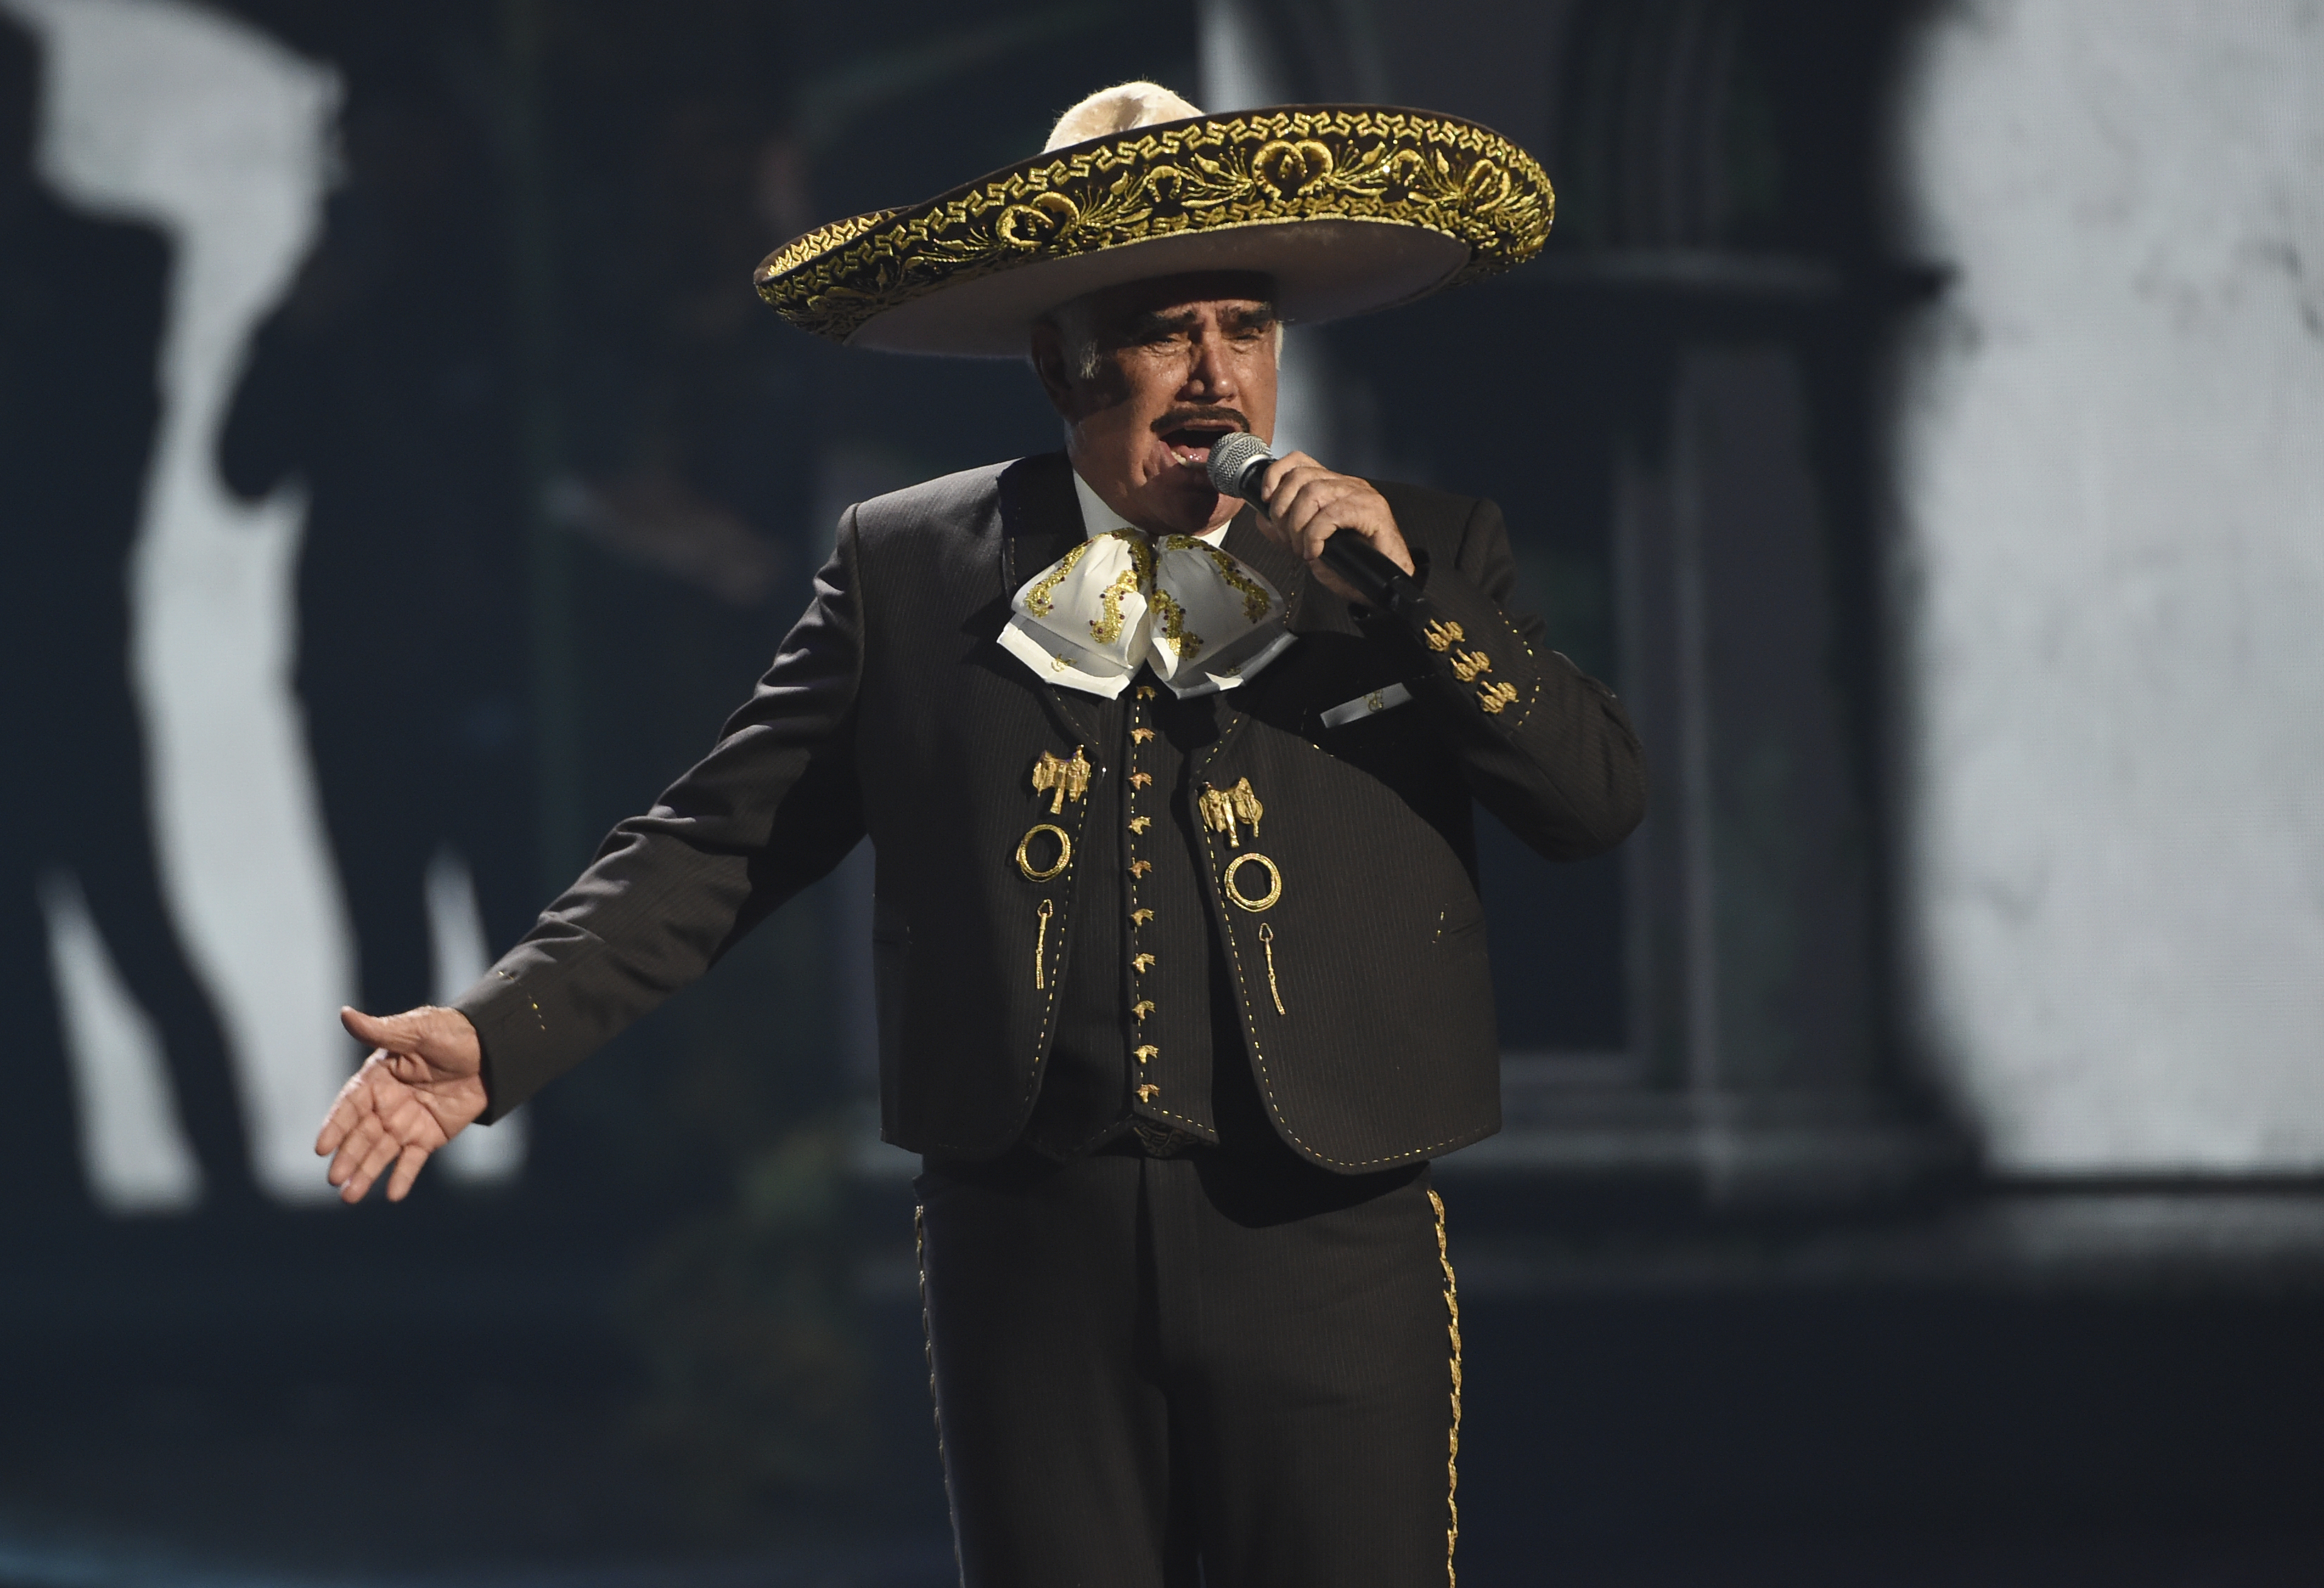 ARCHIVO - Vicente Fernández interpreta un popurrí en la  20a entrega del Latin Grammy el 14 de noviembre de 2019 en Las Vegas. El cantante mexicano falleció a los 81 años en México, anunció su familia en un comunicado. (Foto AP/Chris Pizzello, archivo)